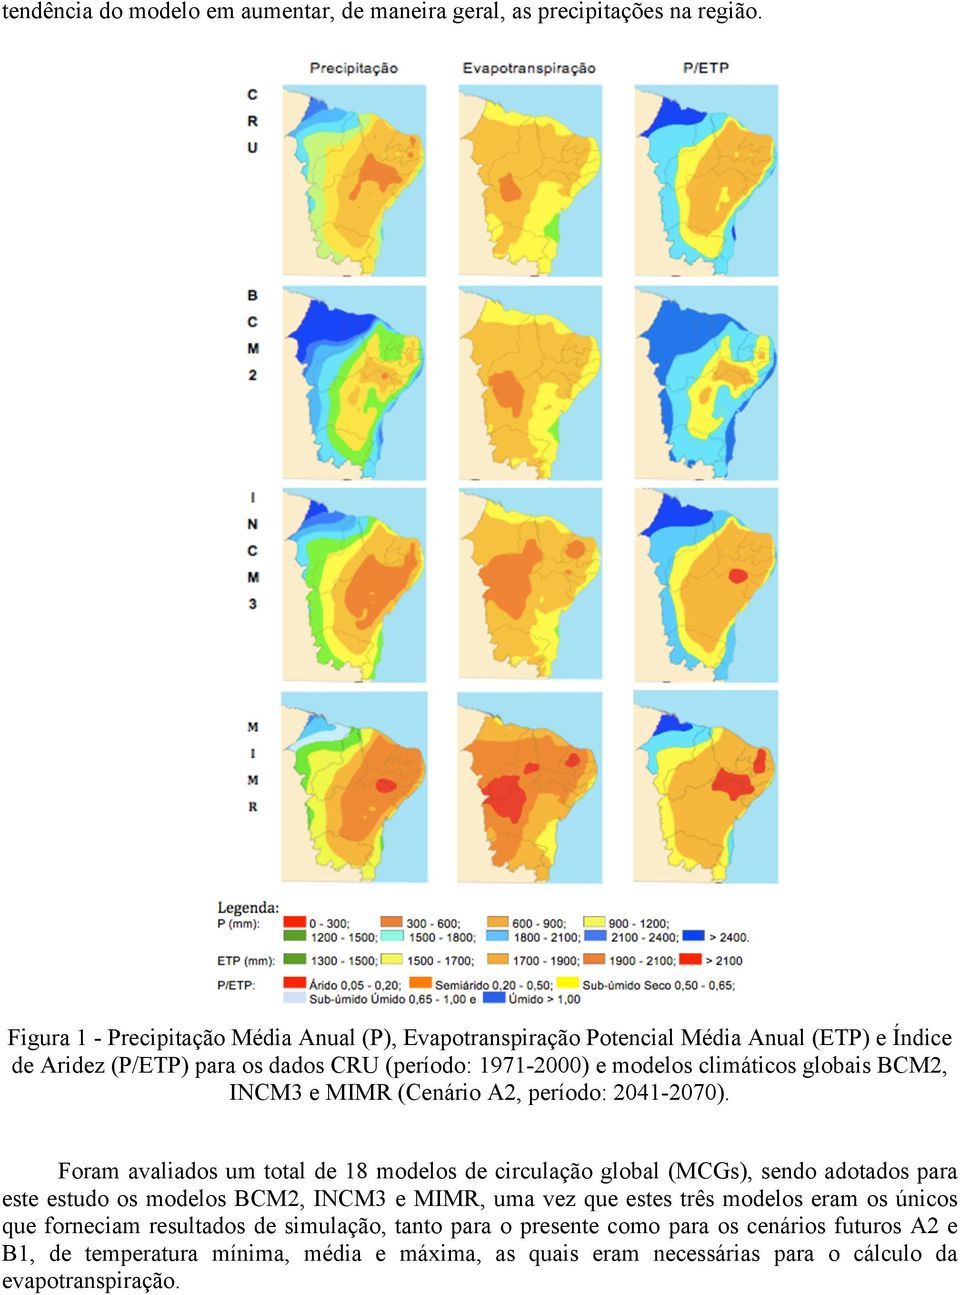 climáticos globais BCM2, INCM3 e MIMR (Cenário A2, período: 2041-2070).